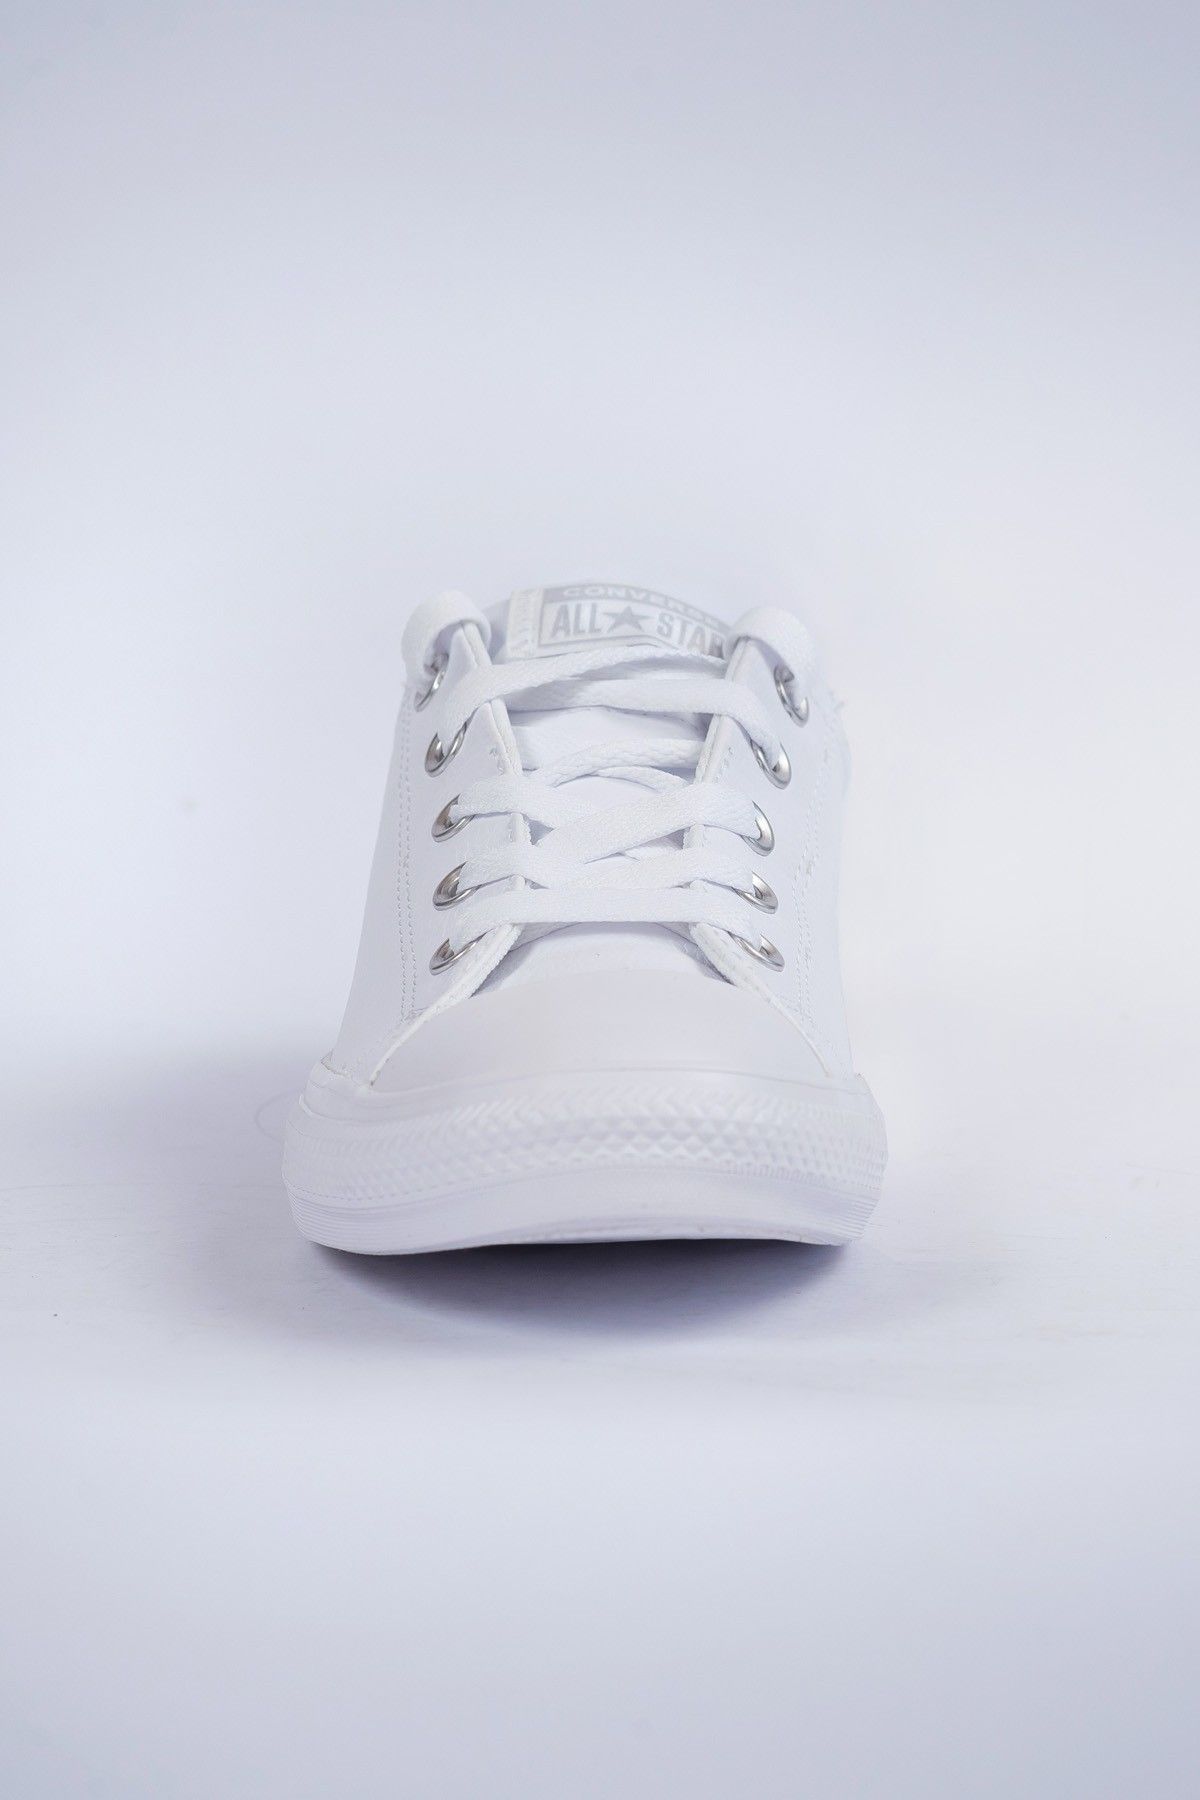 Converse Ctas Street Slip White/White/White Unisex Sneakers